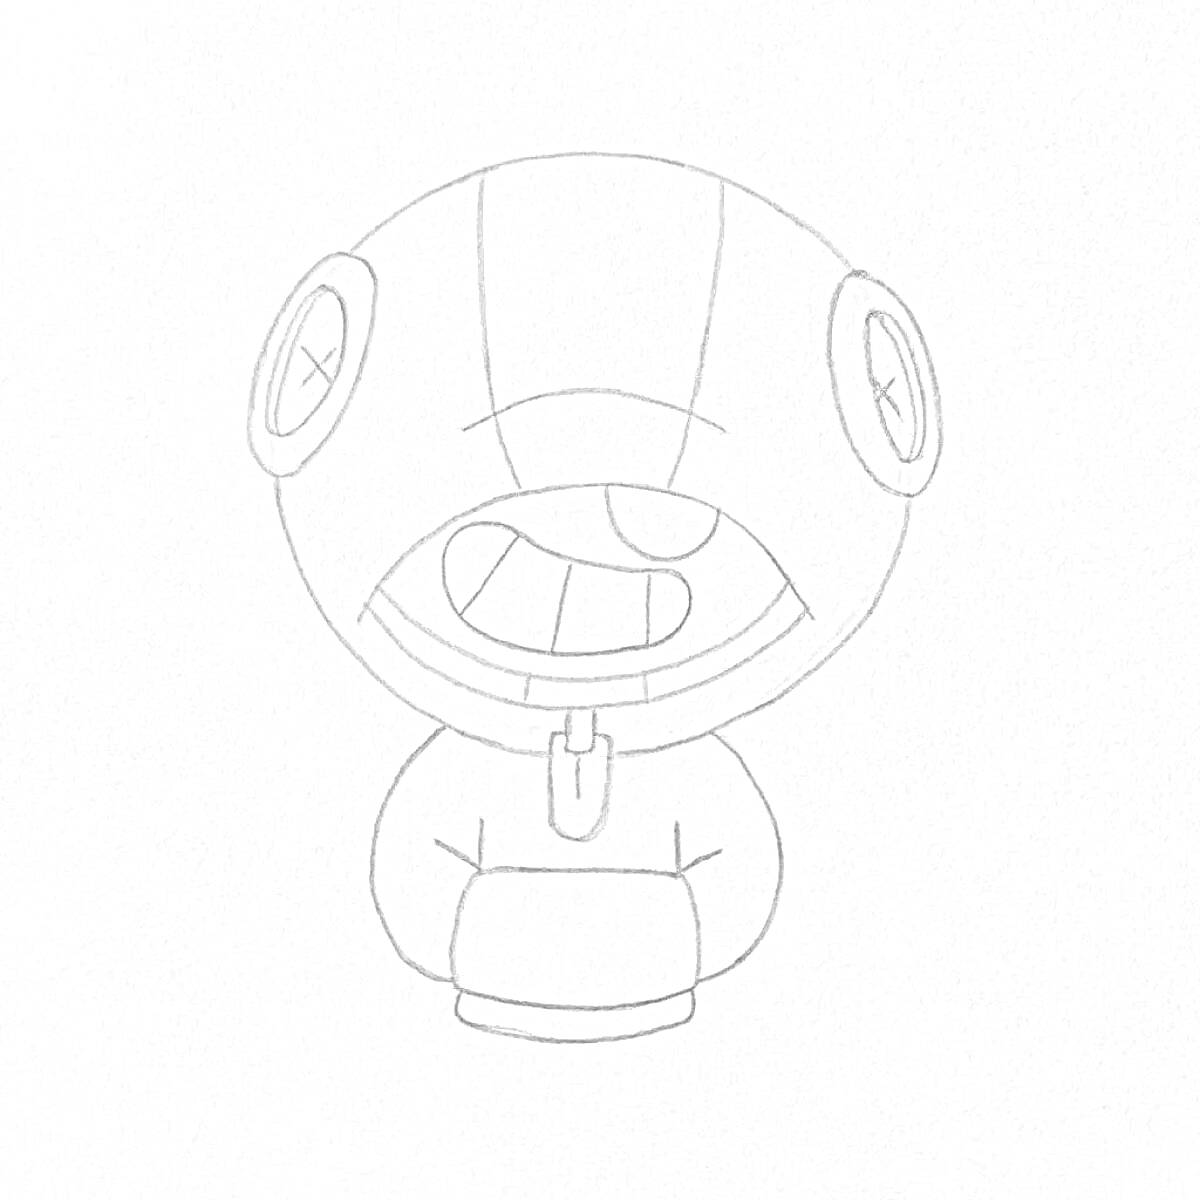 Раскраска Персонаж из игры, крупная голова с крестиками на глазах, усмешка с языком, капюшон.